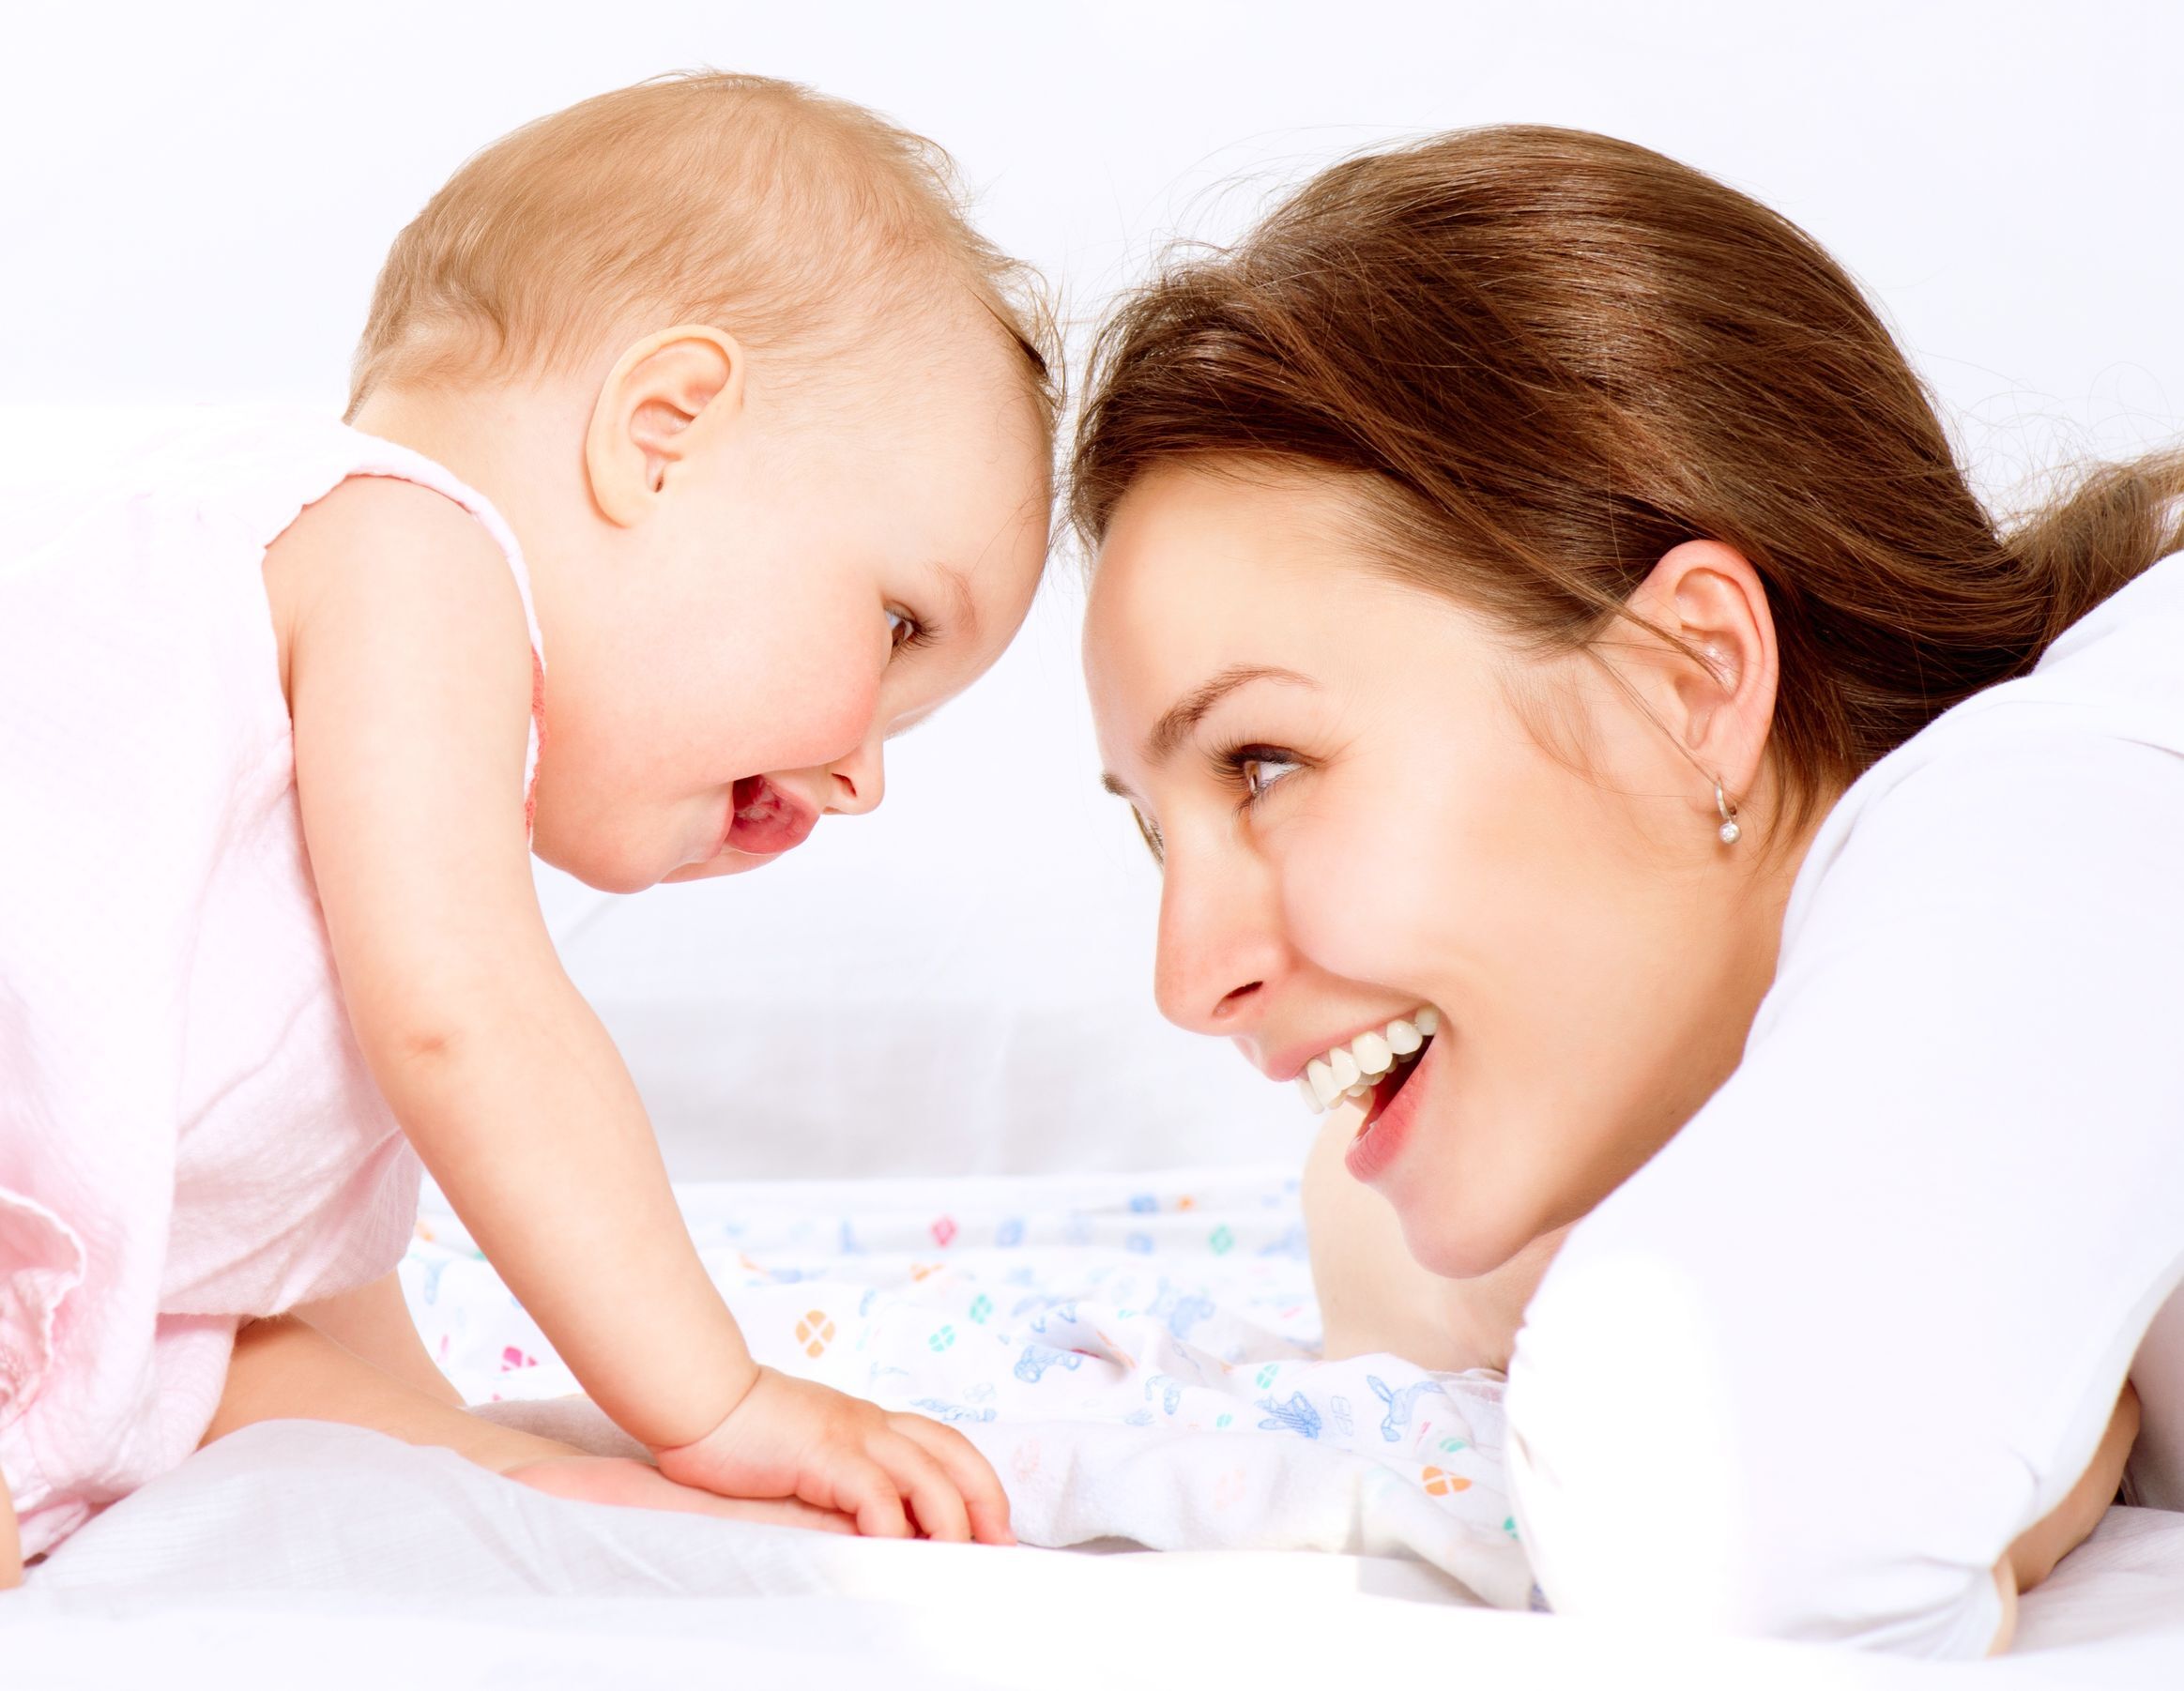 शिशु को स्तनपान कराना माँ के स्वास्थ्य के लिए भी लाभदायक है - वेद प्रकाश